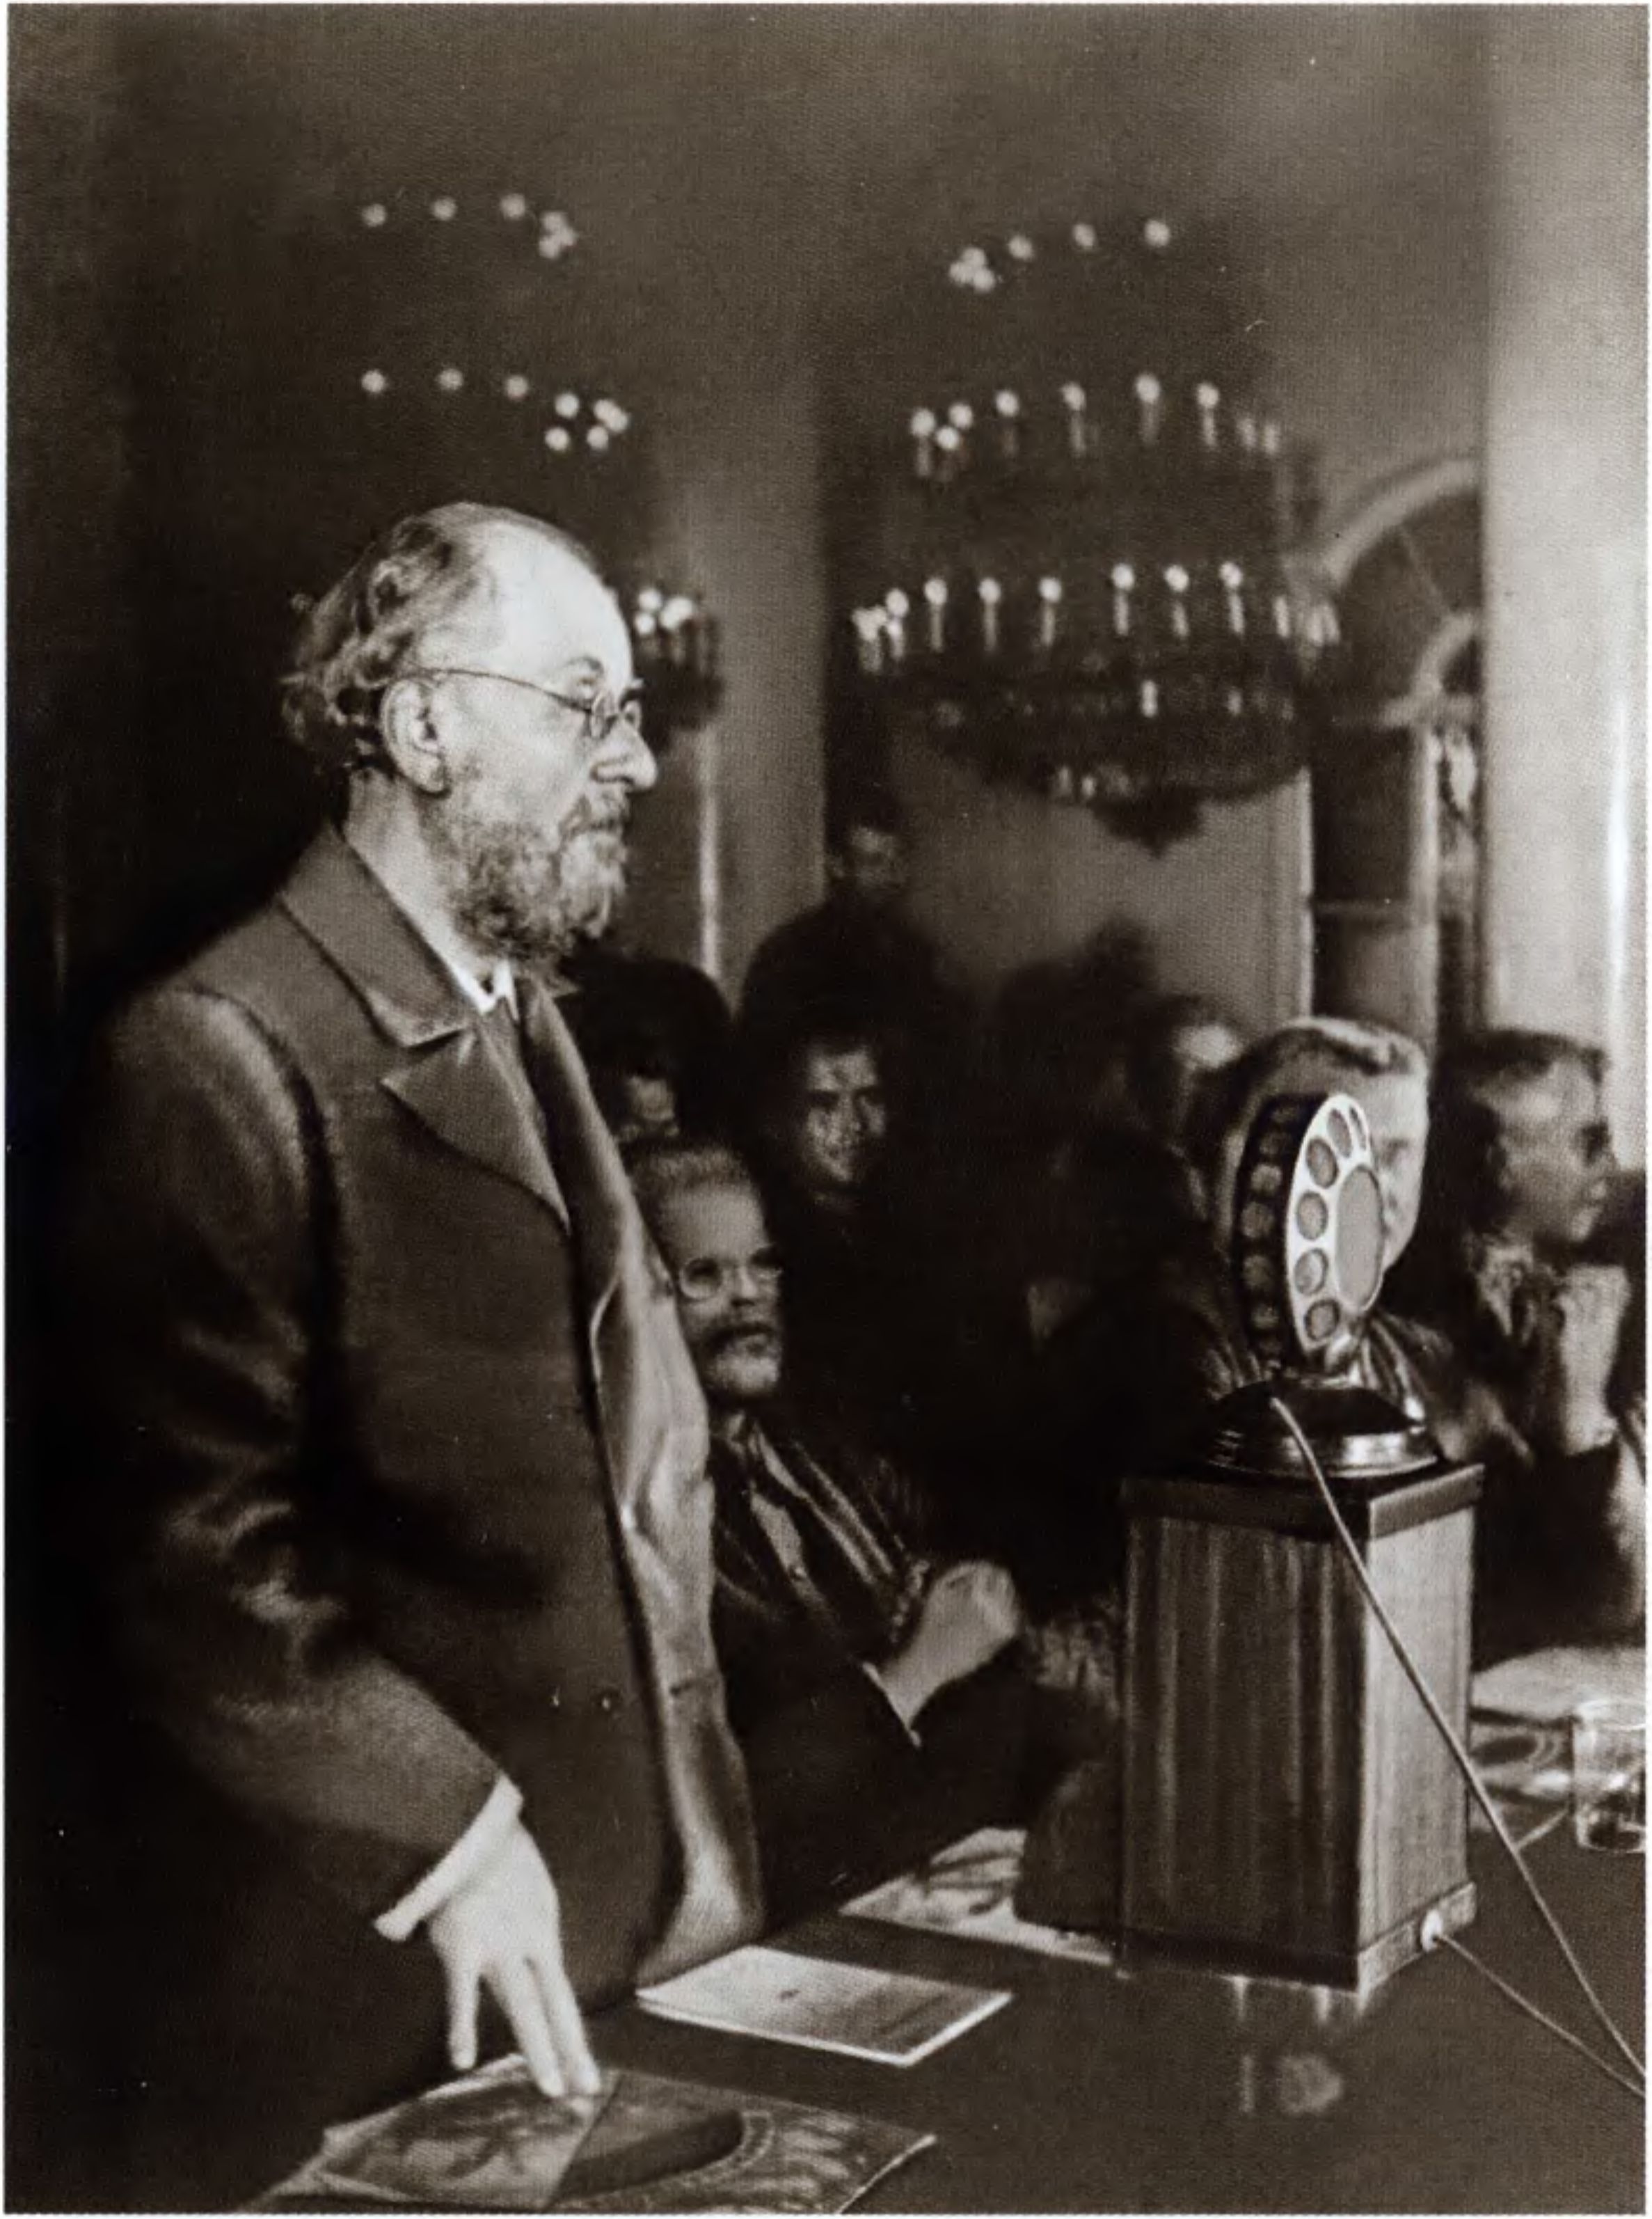 Циолковский выступает в Колонном зале на торжественном собрании. Фото из собрания ГМИК